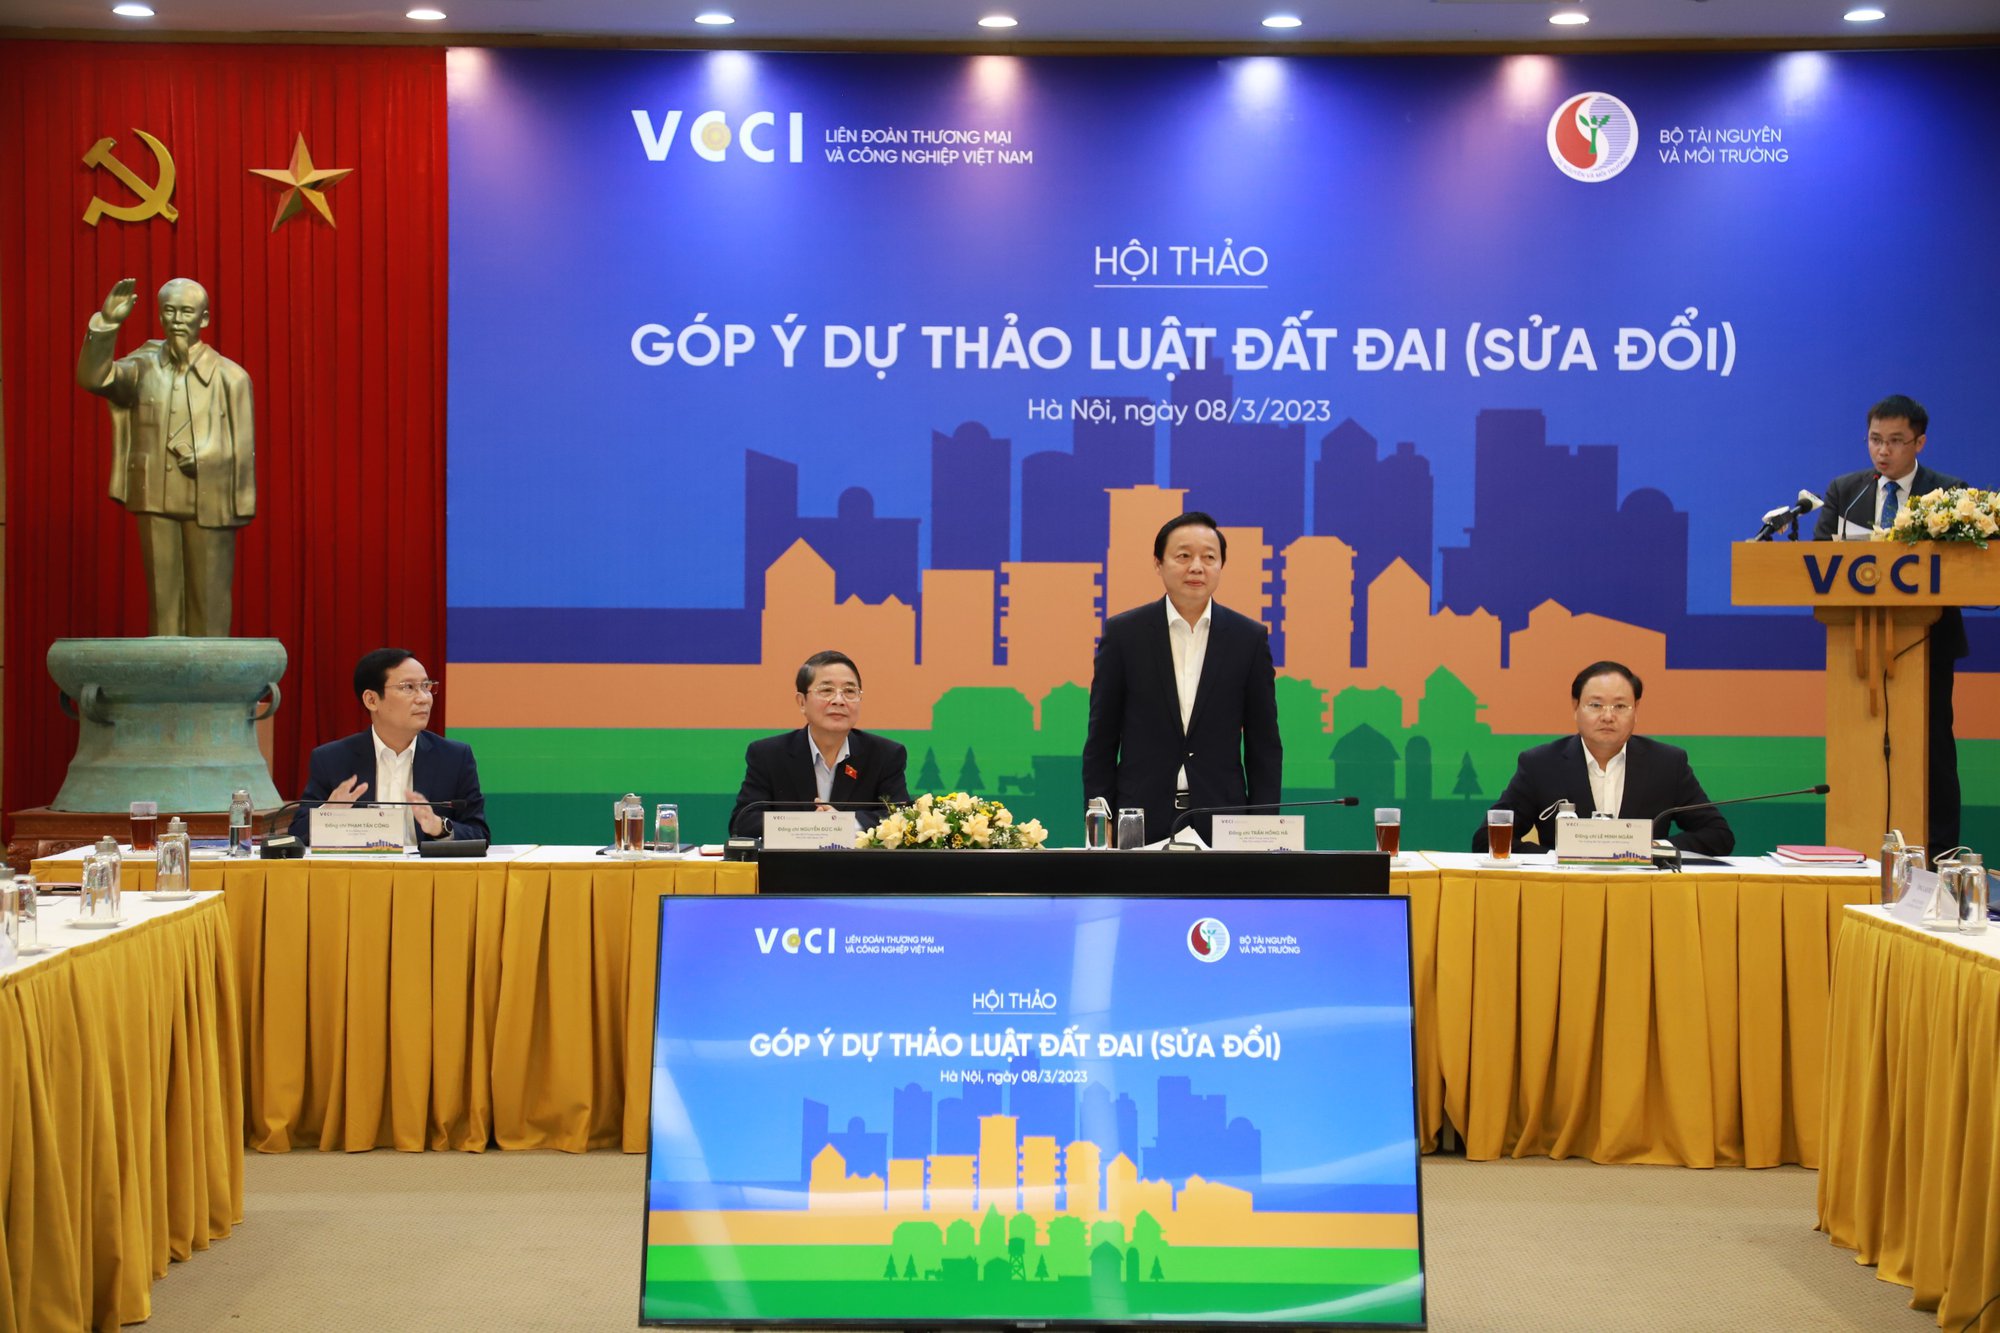 Phó Thủ tướng Trần Hồng Hà: Kỳ vọng bảng giá đất sẽ gần nhất với giá thị trường - Ảnh 1.